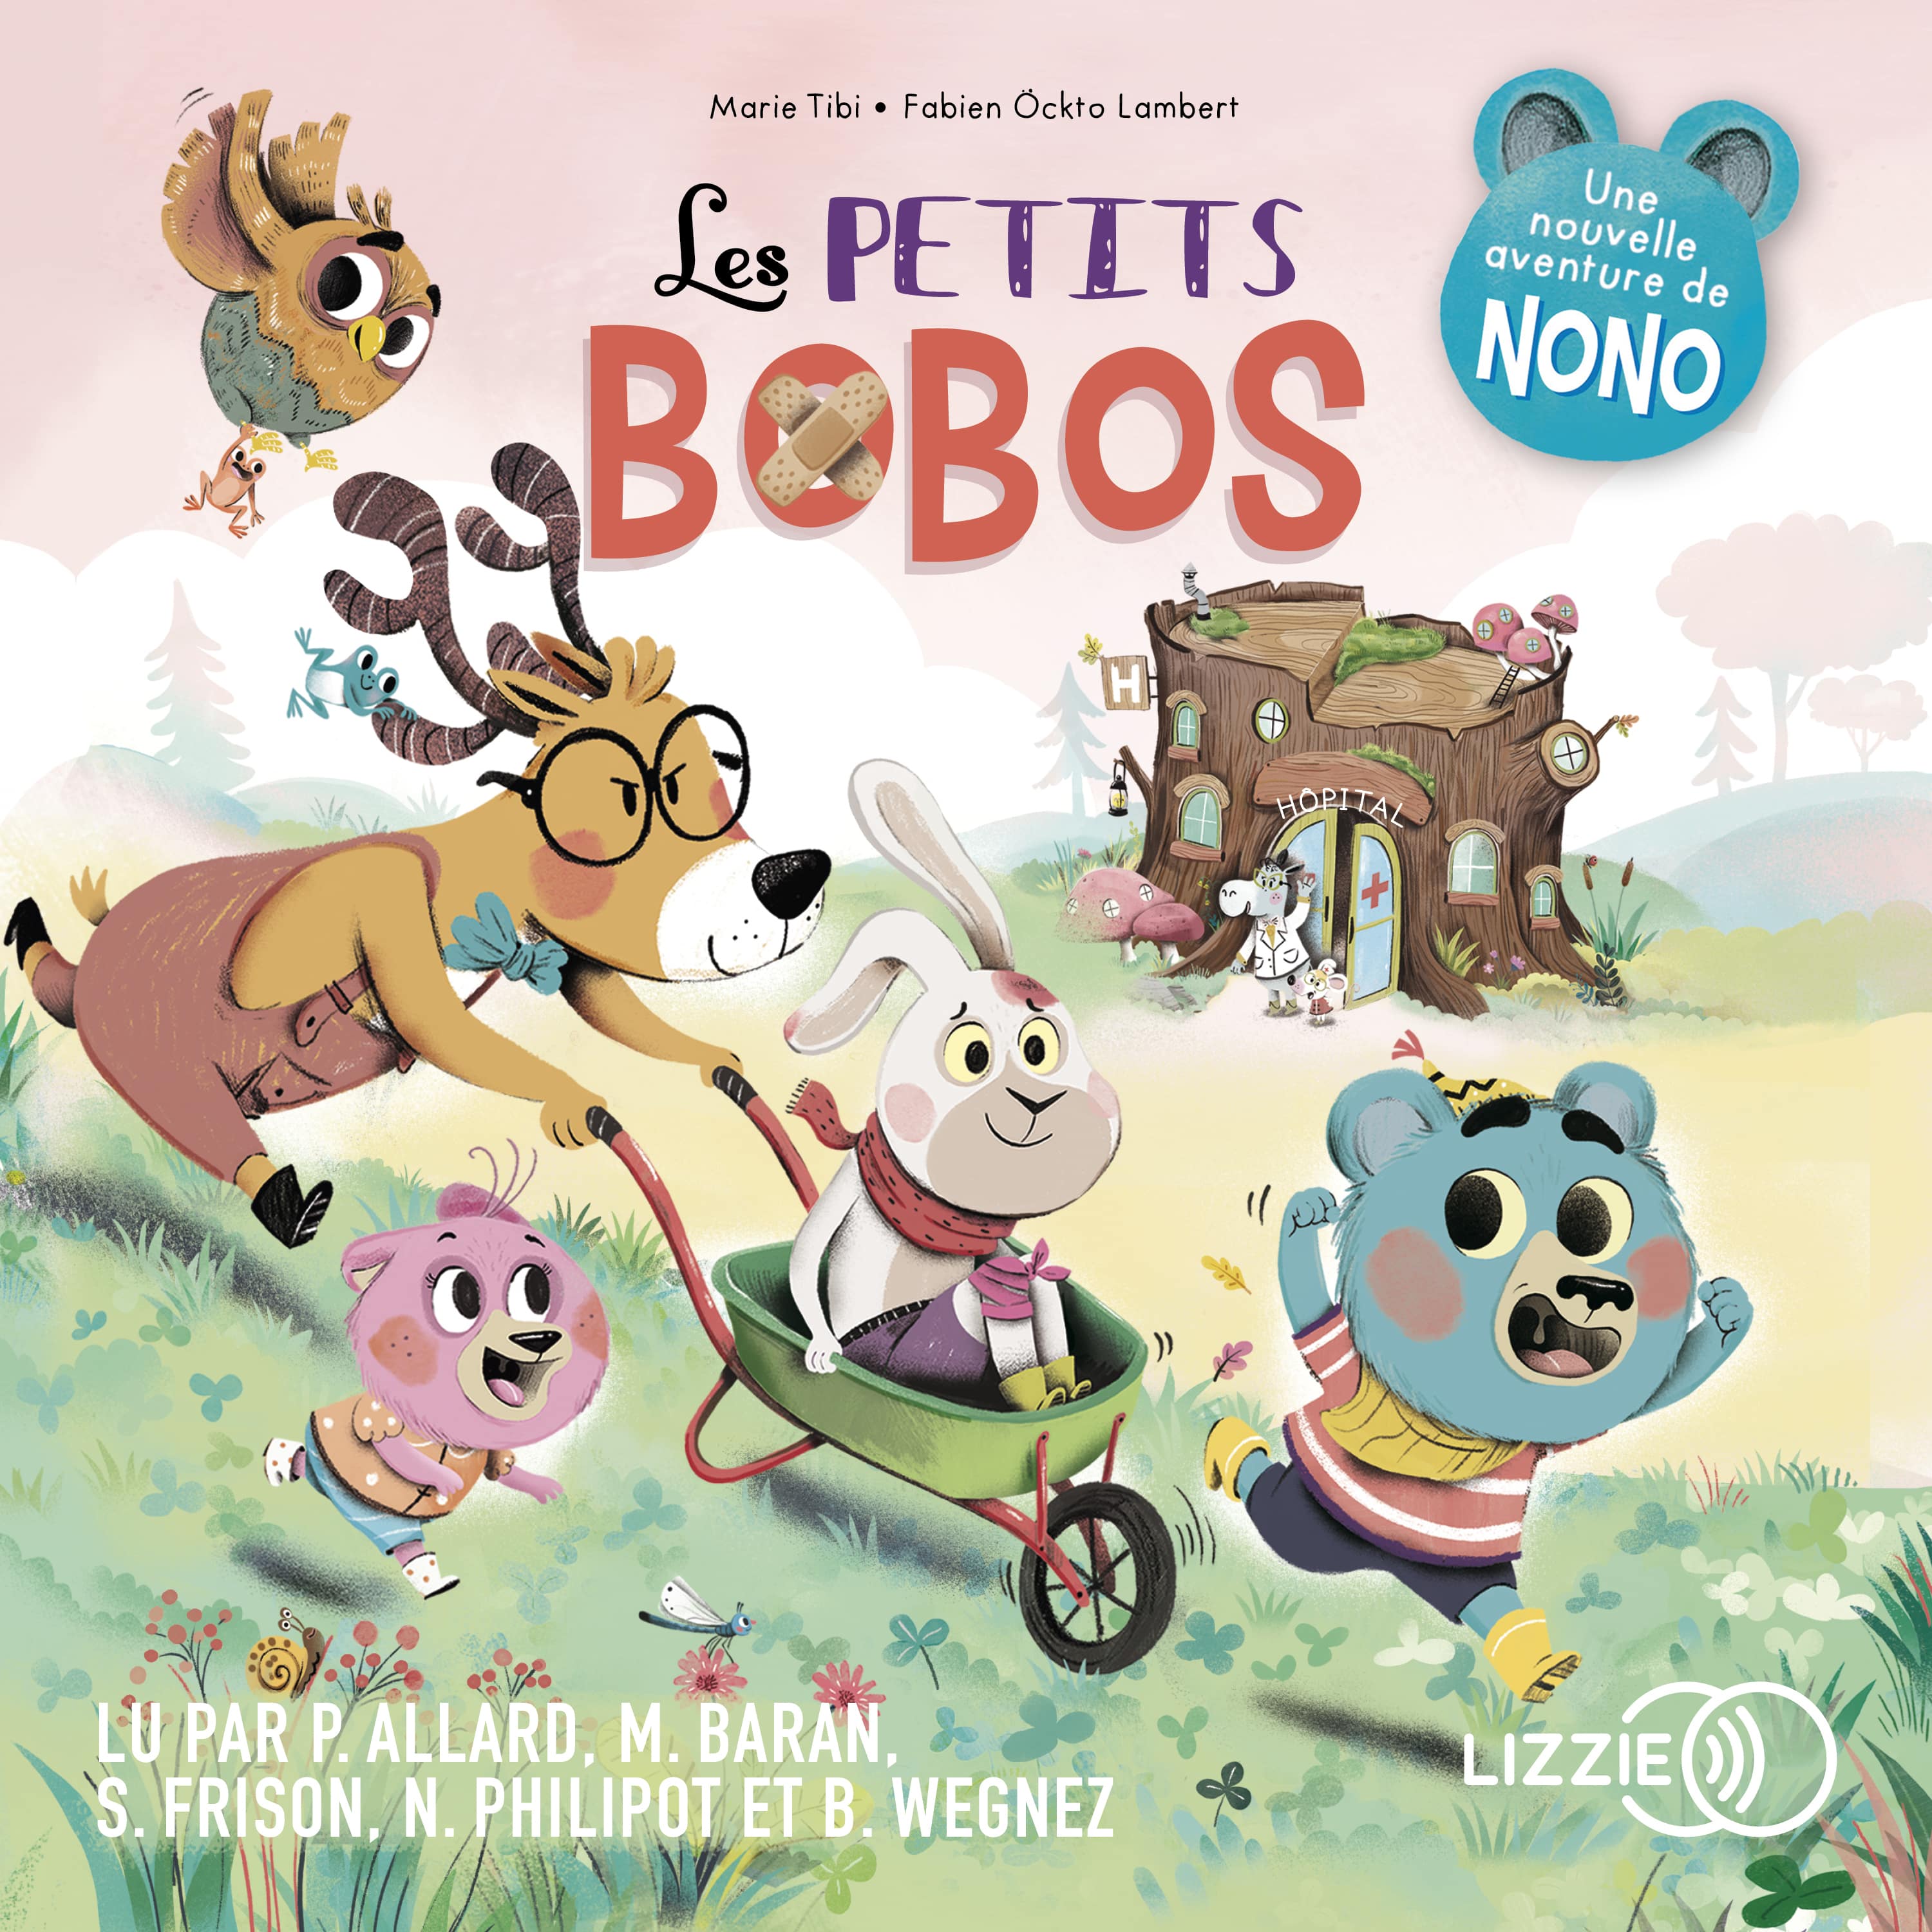 Couverture du livre audio Les petits bobos - Dans le bois de Coin joli De Fabien Öckto-Lambert  et Marie Tibi 